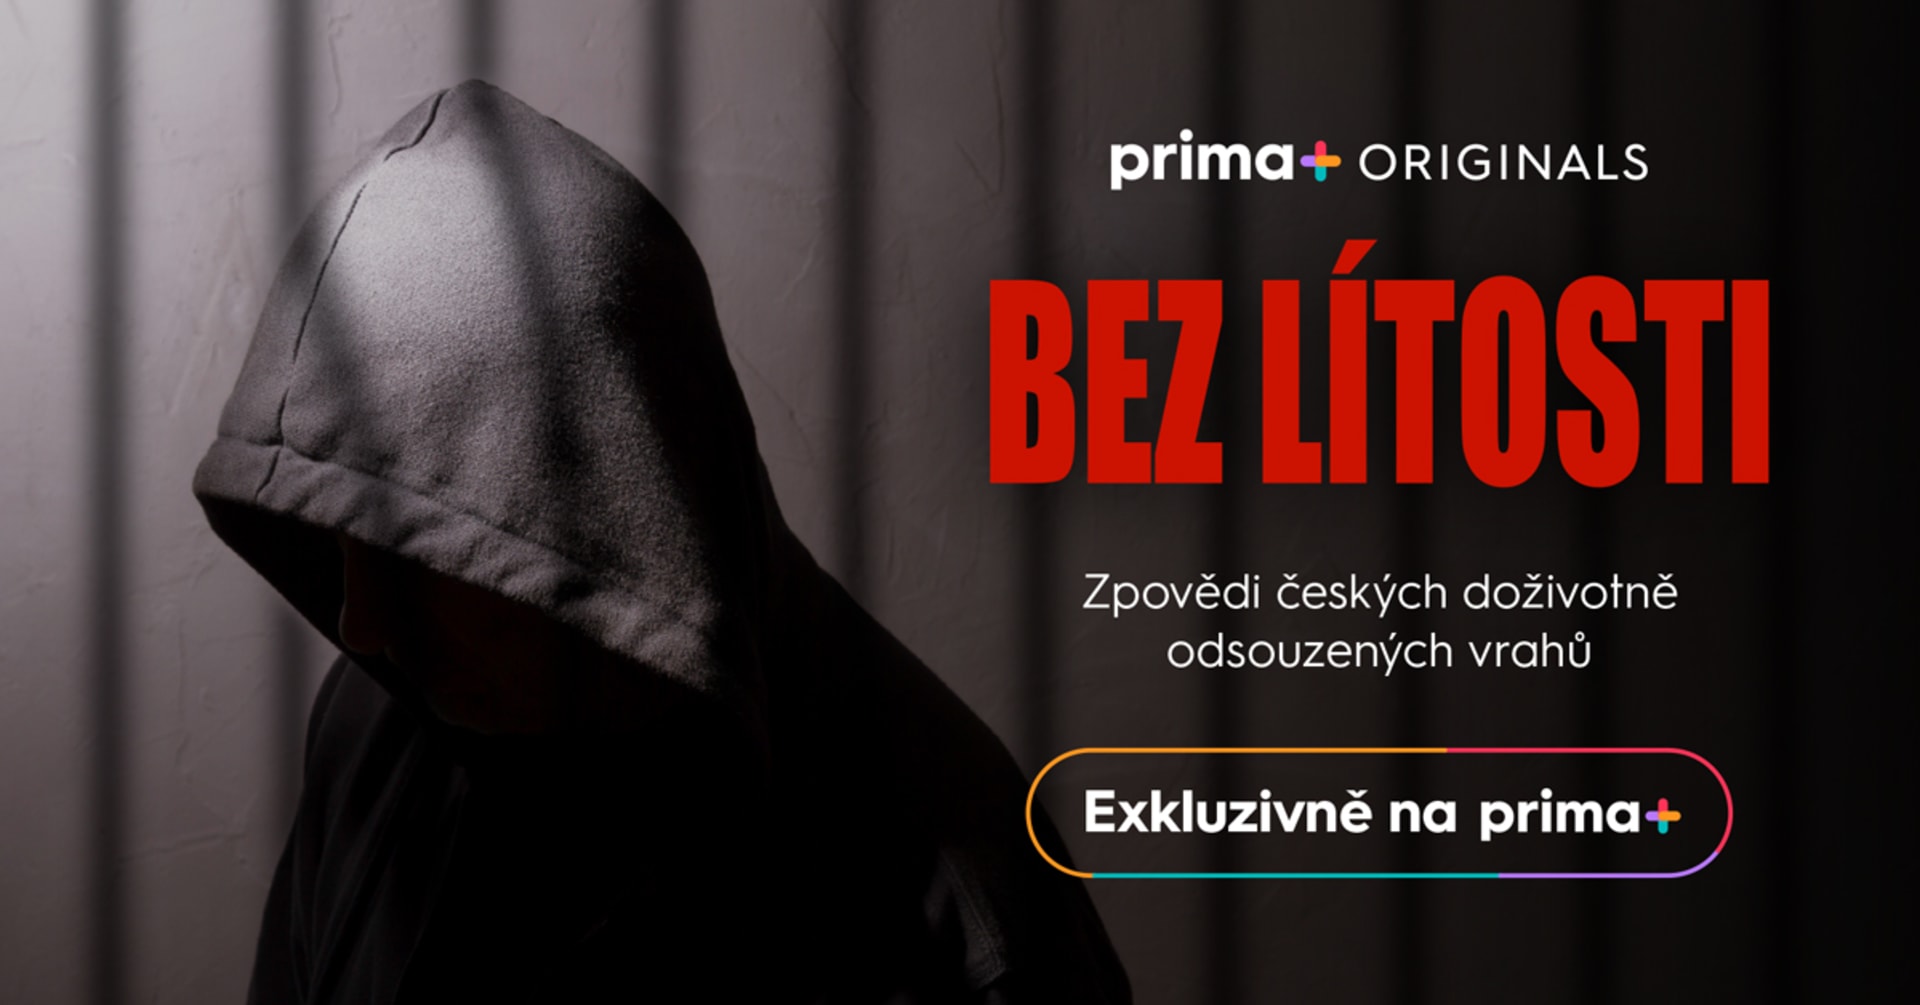 Krimi dokureality Bez lítosti online na primaplus.cz